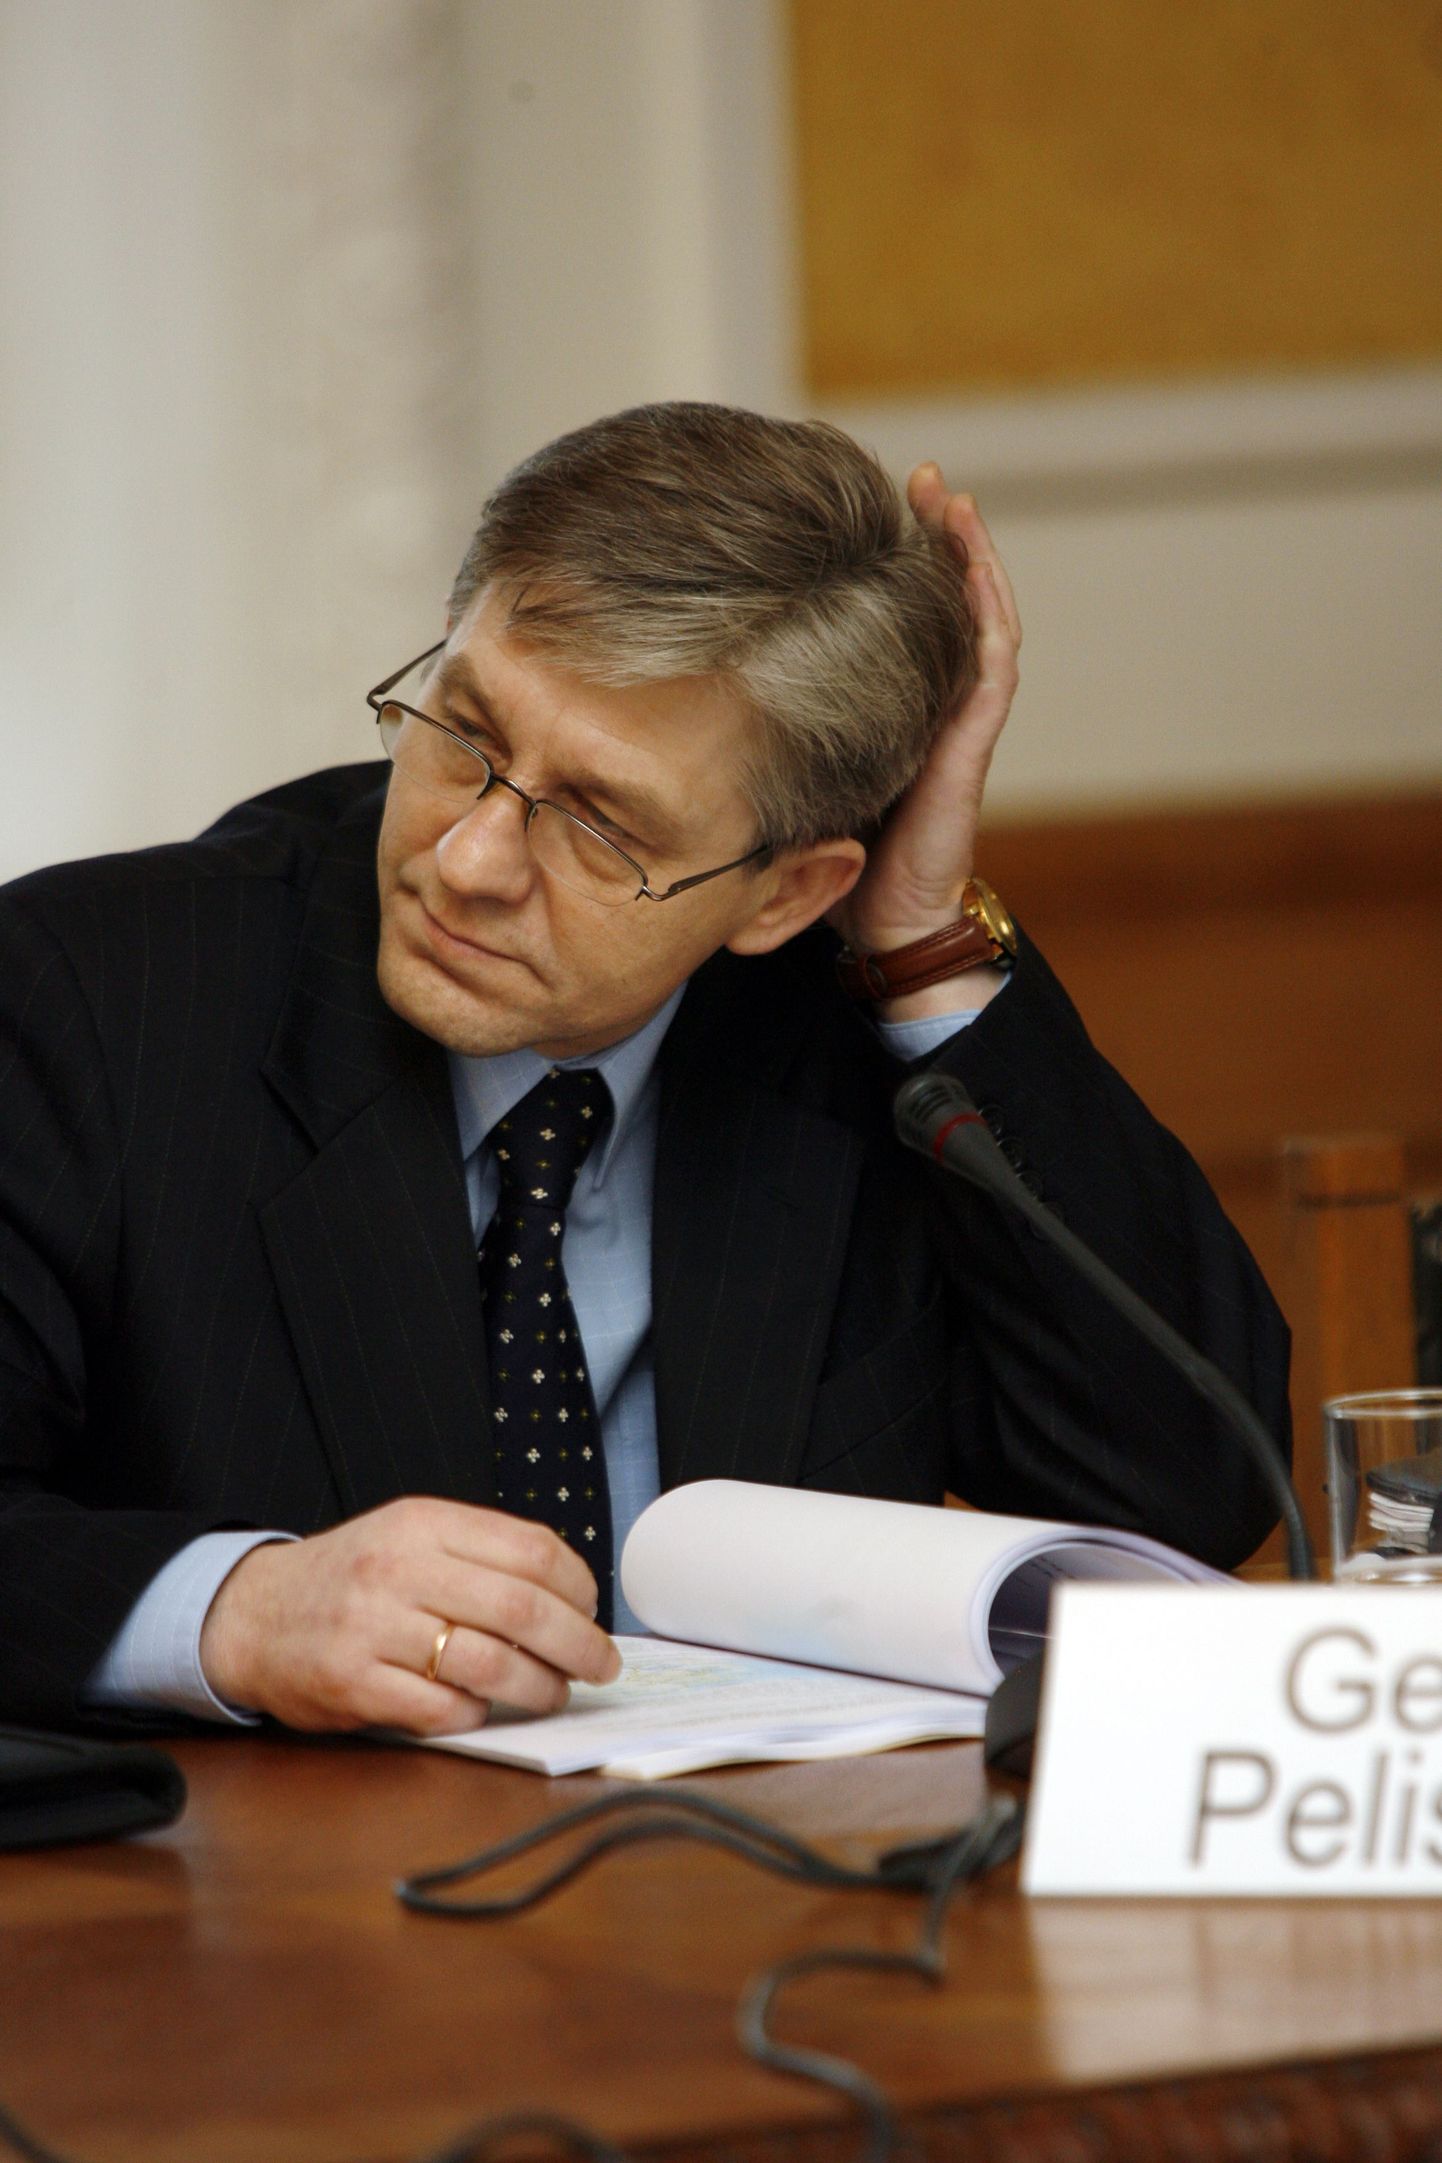 Tallinna Televisiooni nõukogu esimeheks sai riigikogu liige Georg Pelisaar.